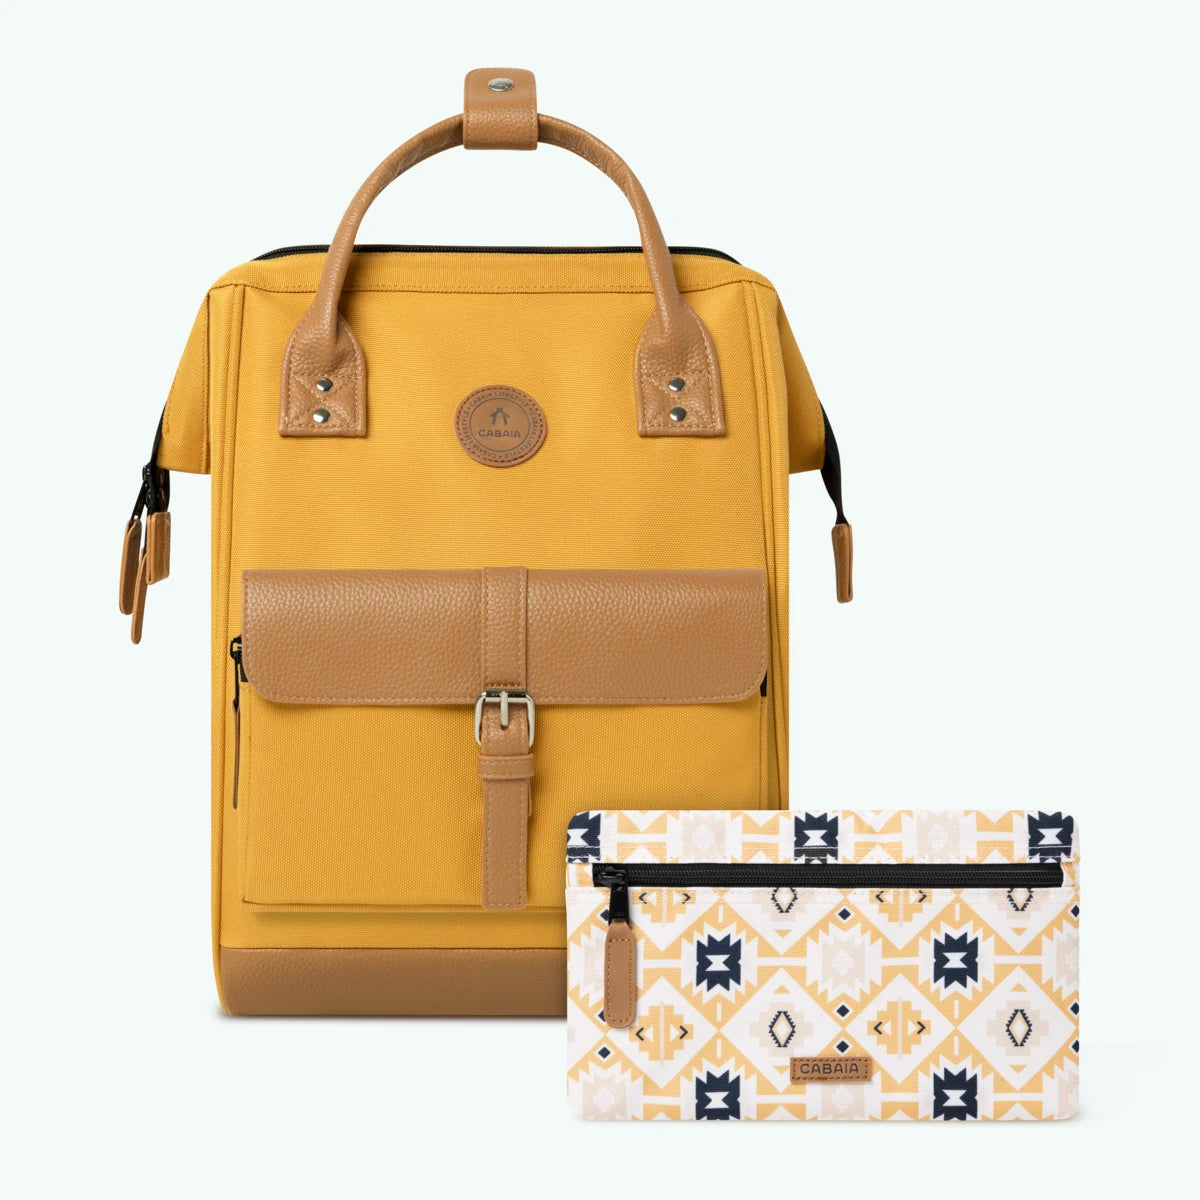 adventurer-ocher-medium-backpack